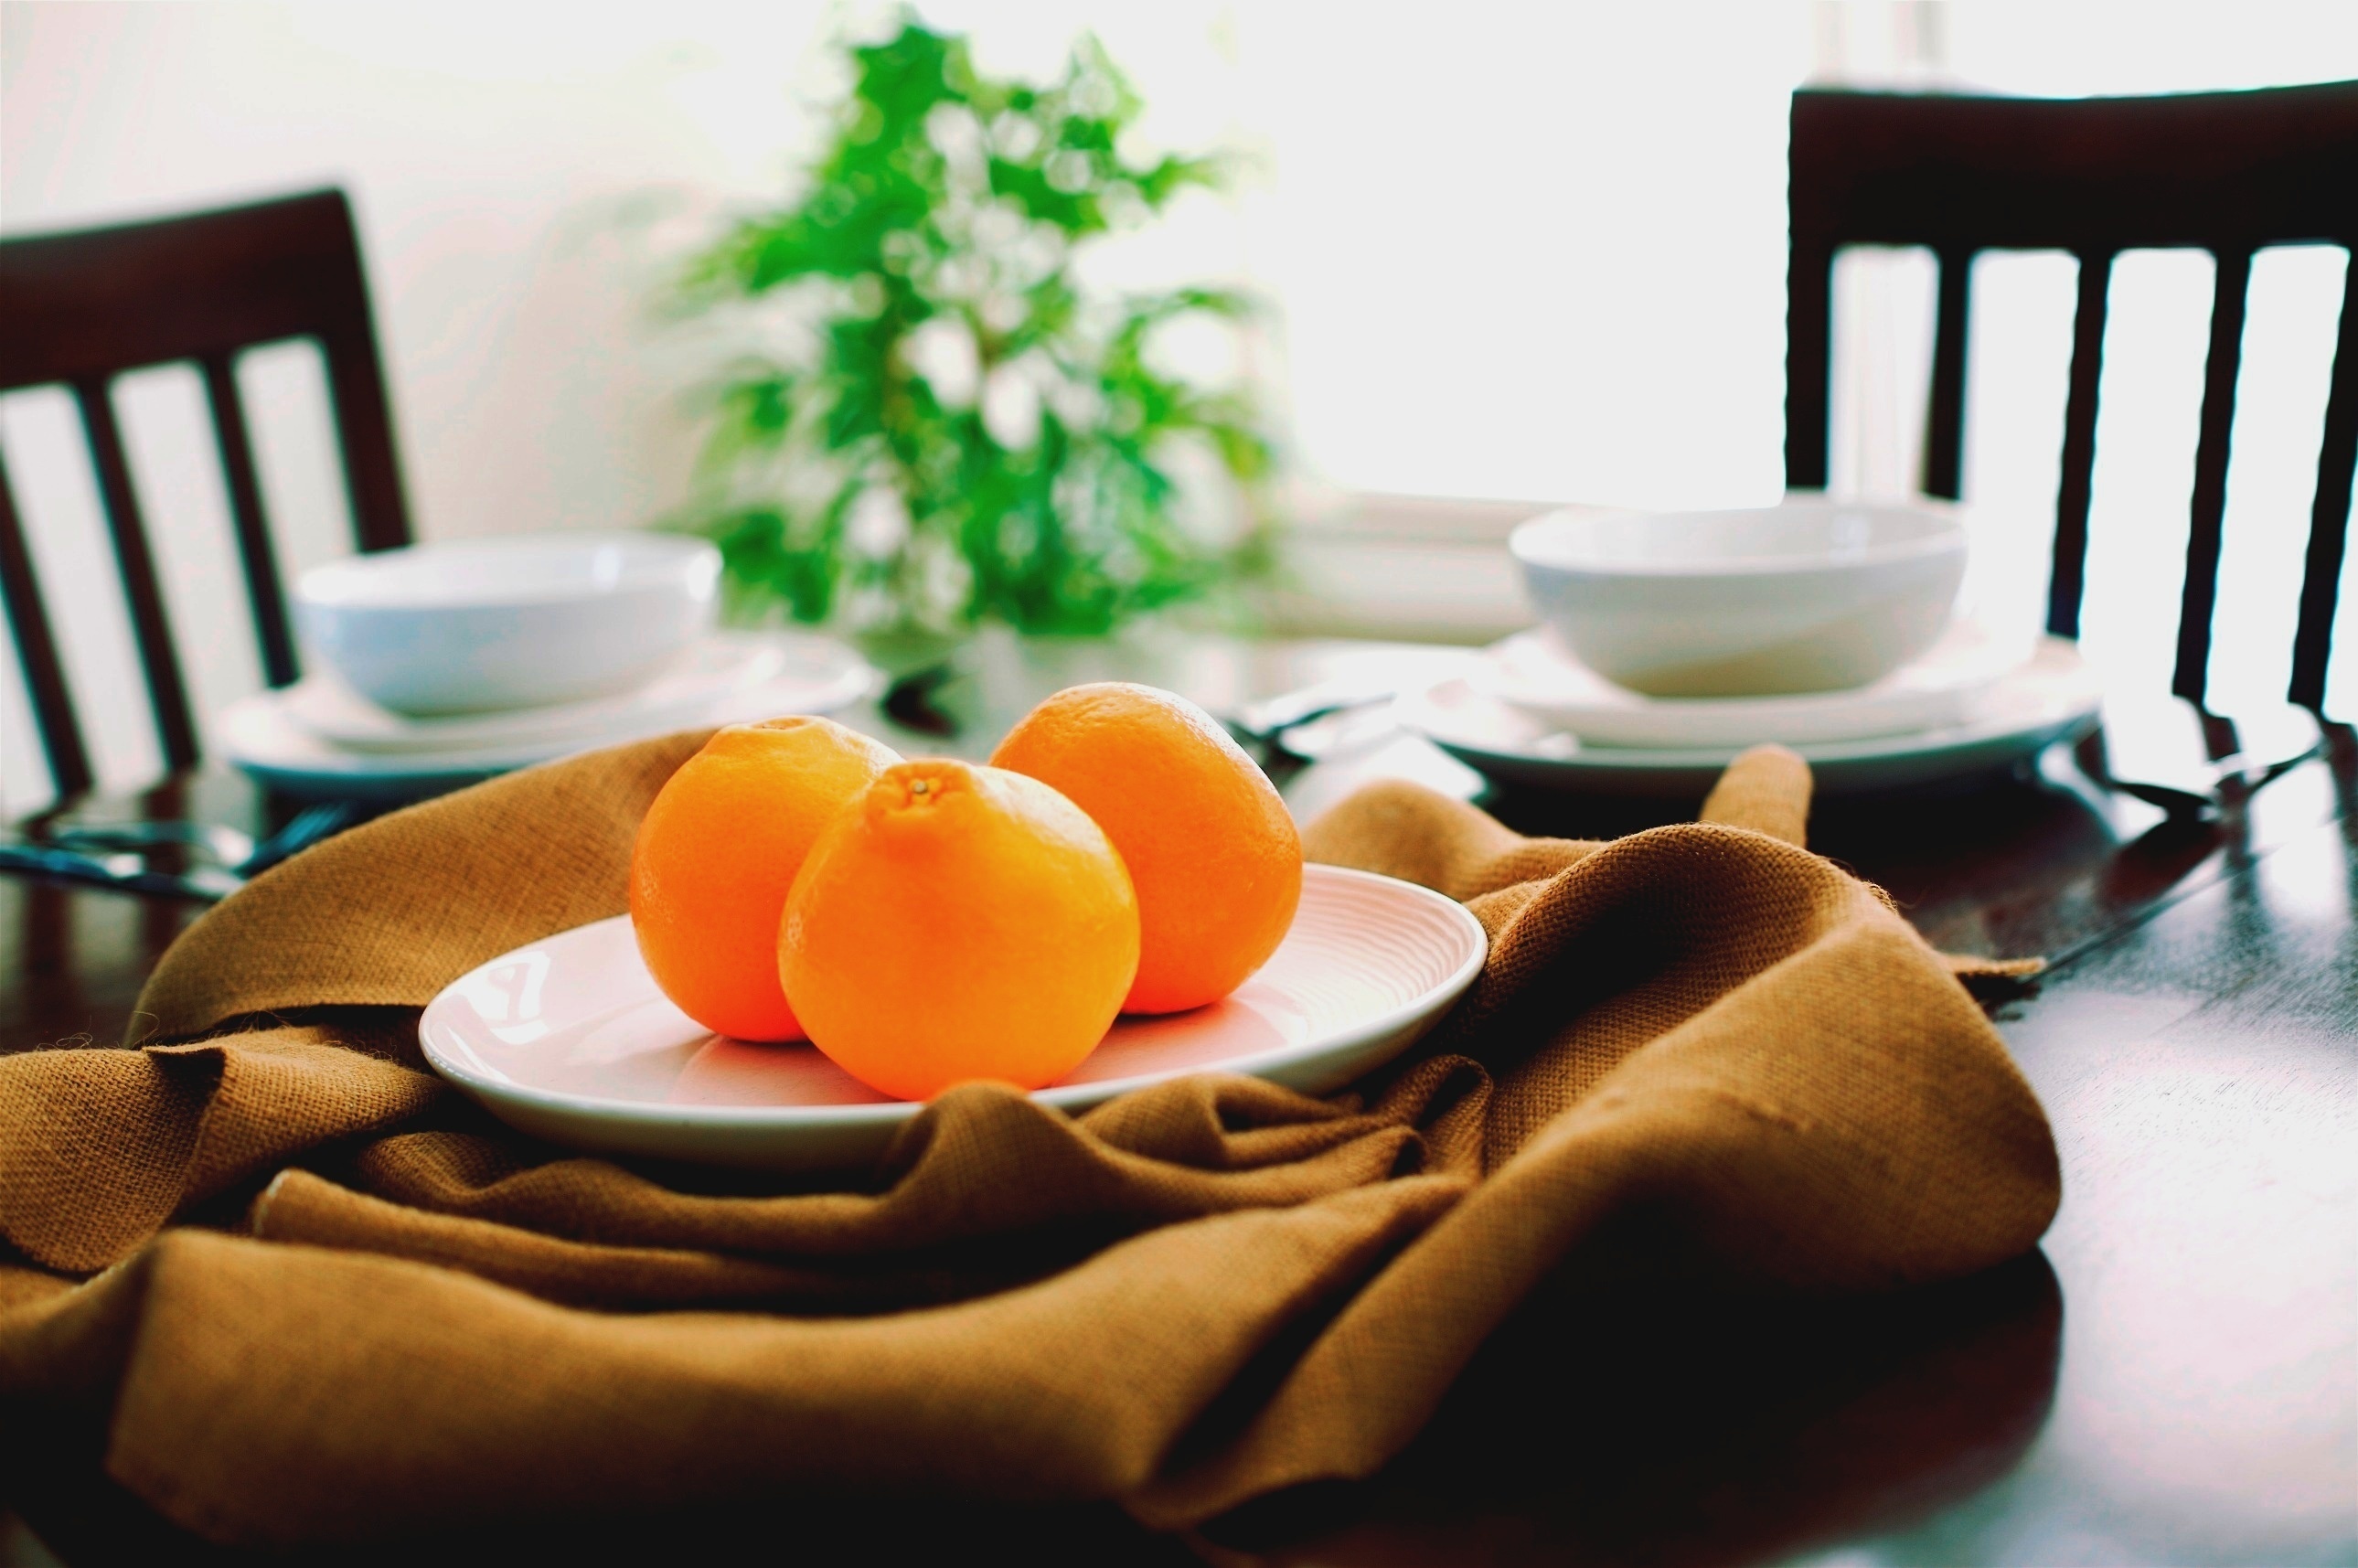 Мандарины на тарелке. Тарелка "апельсин". Мандарины в тарелке. Апельсины на столе. Мандарины на столе.